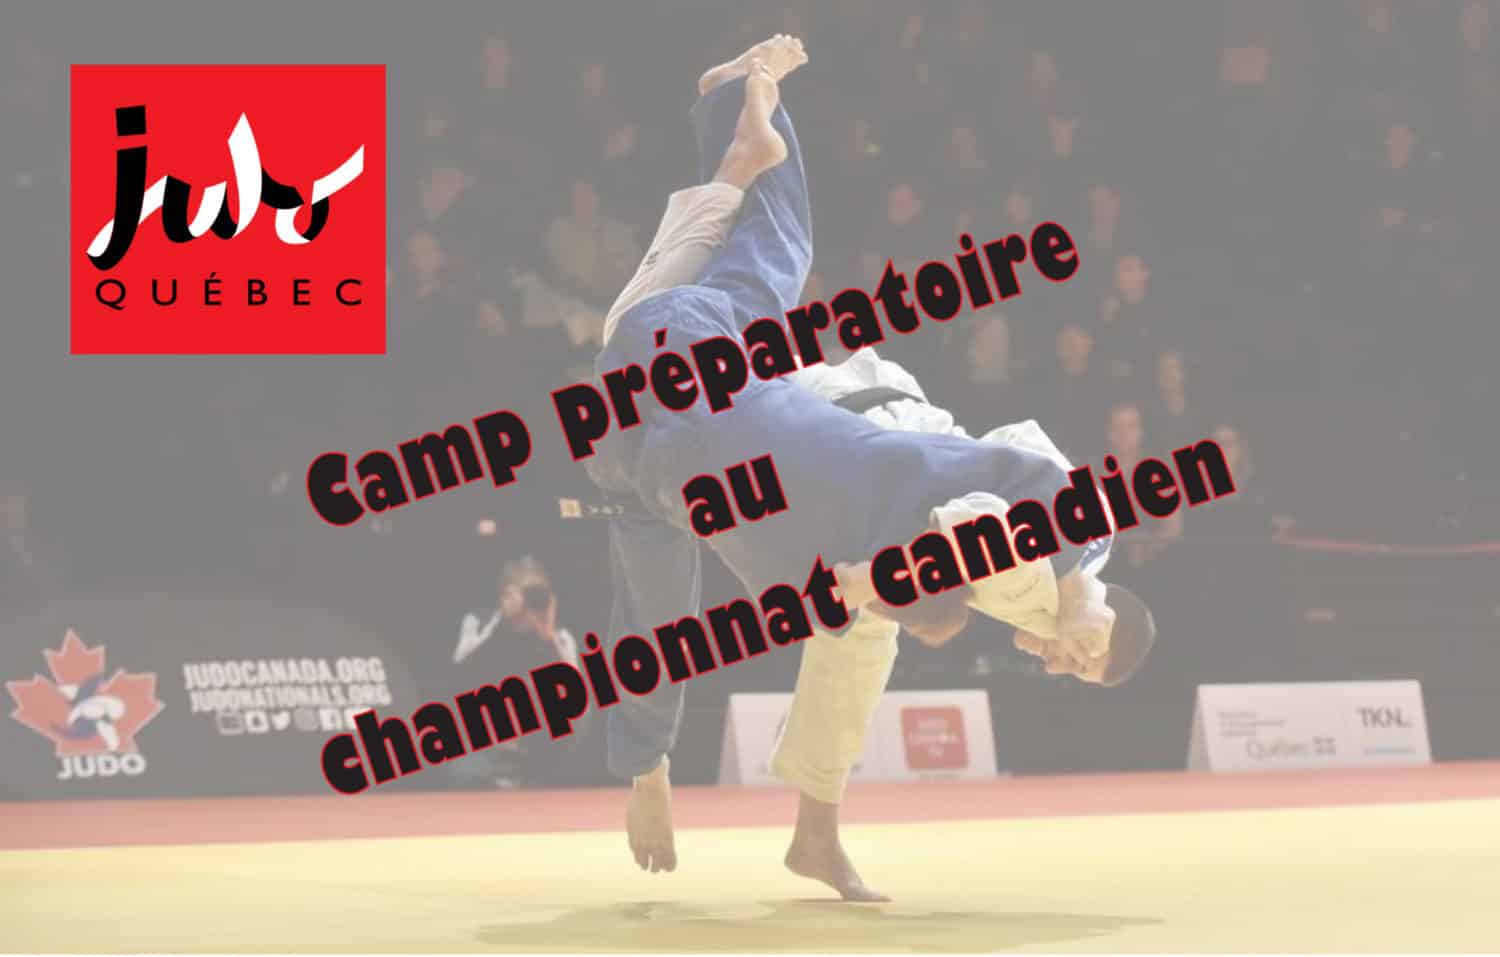 Camp préparatoire aux championnats canadiens